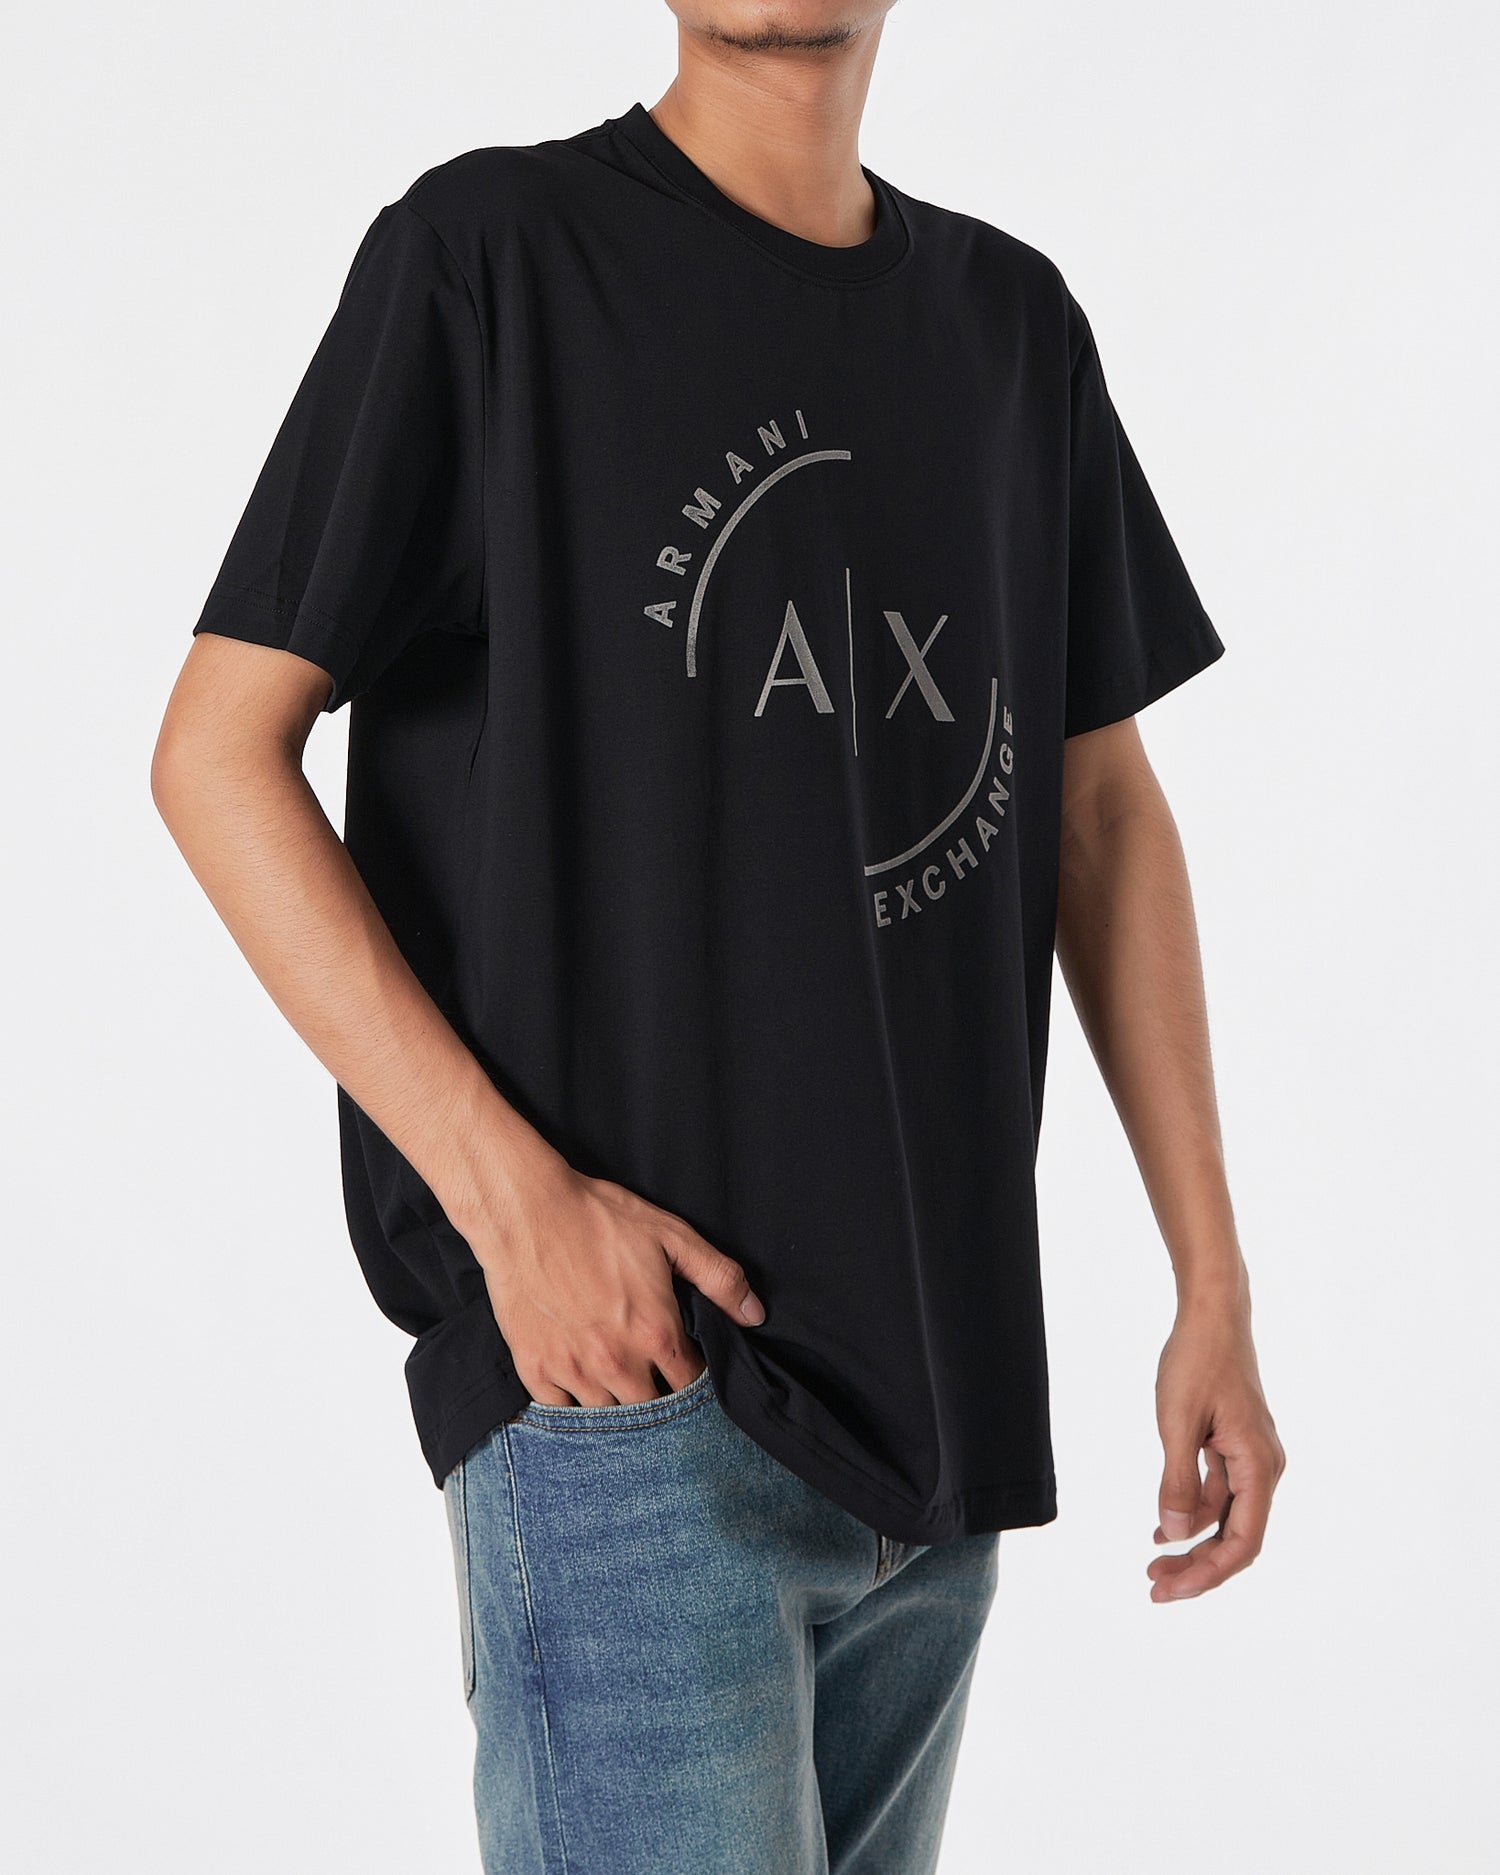 ARM Velvet Logo Printed Men Black T-Shirt 16.90